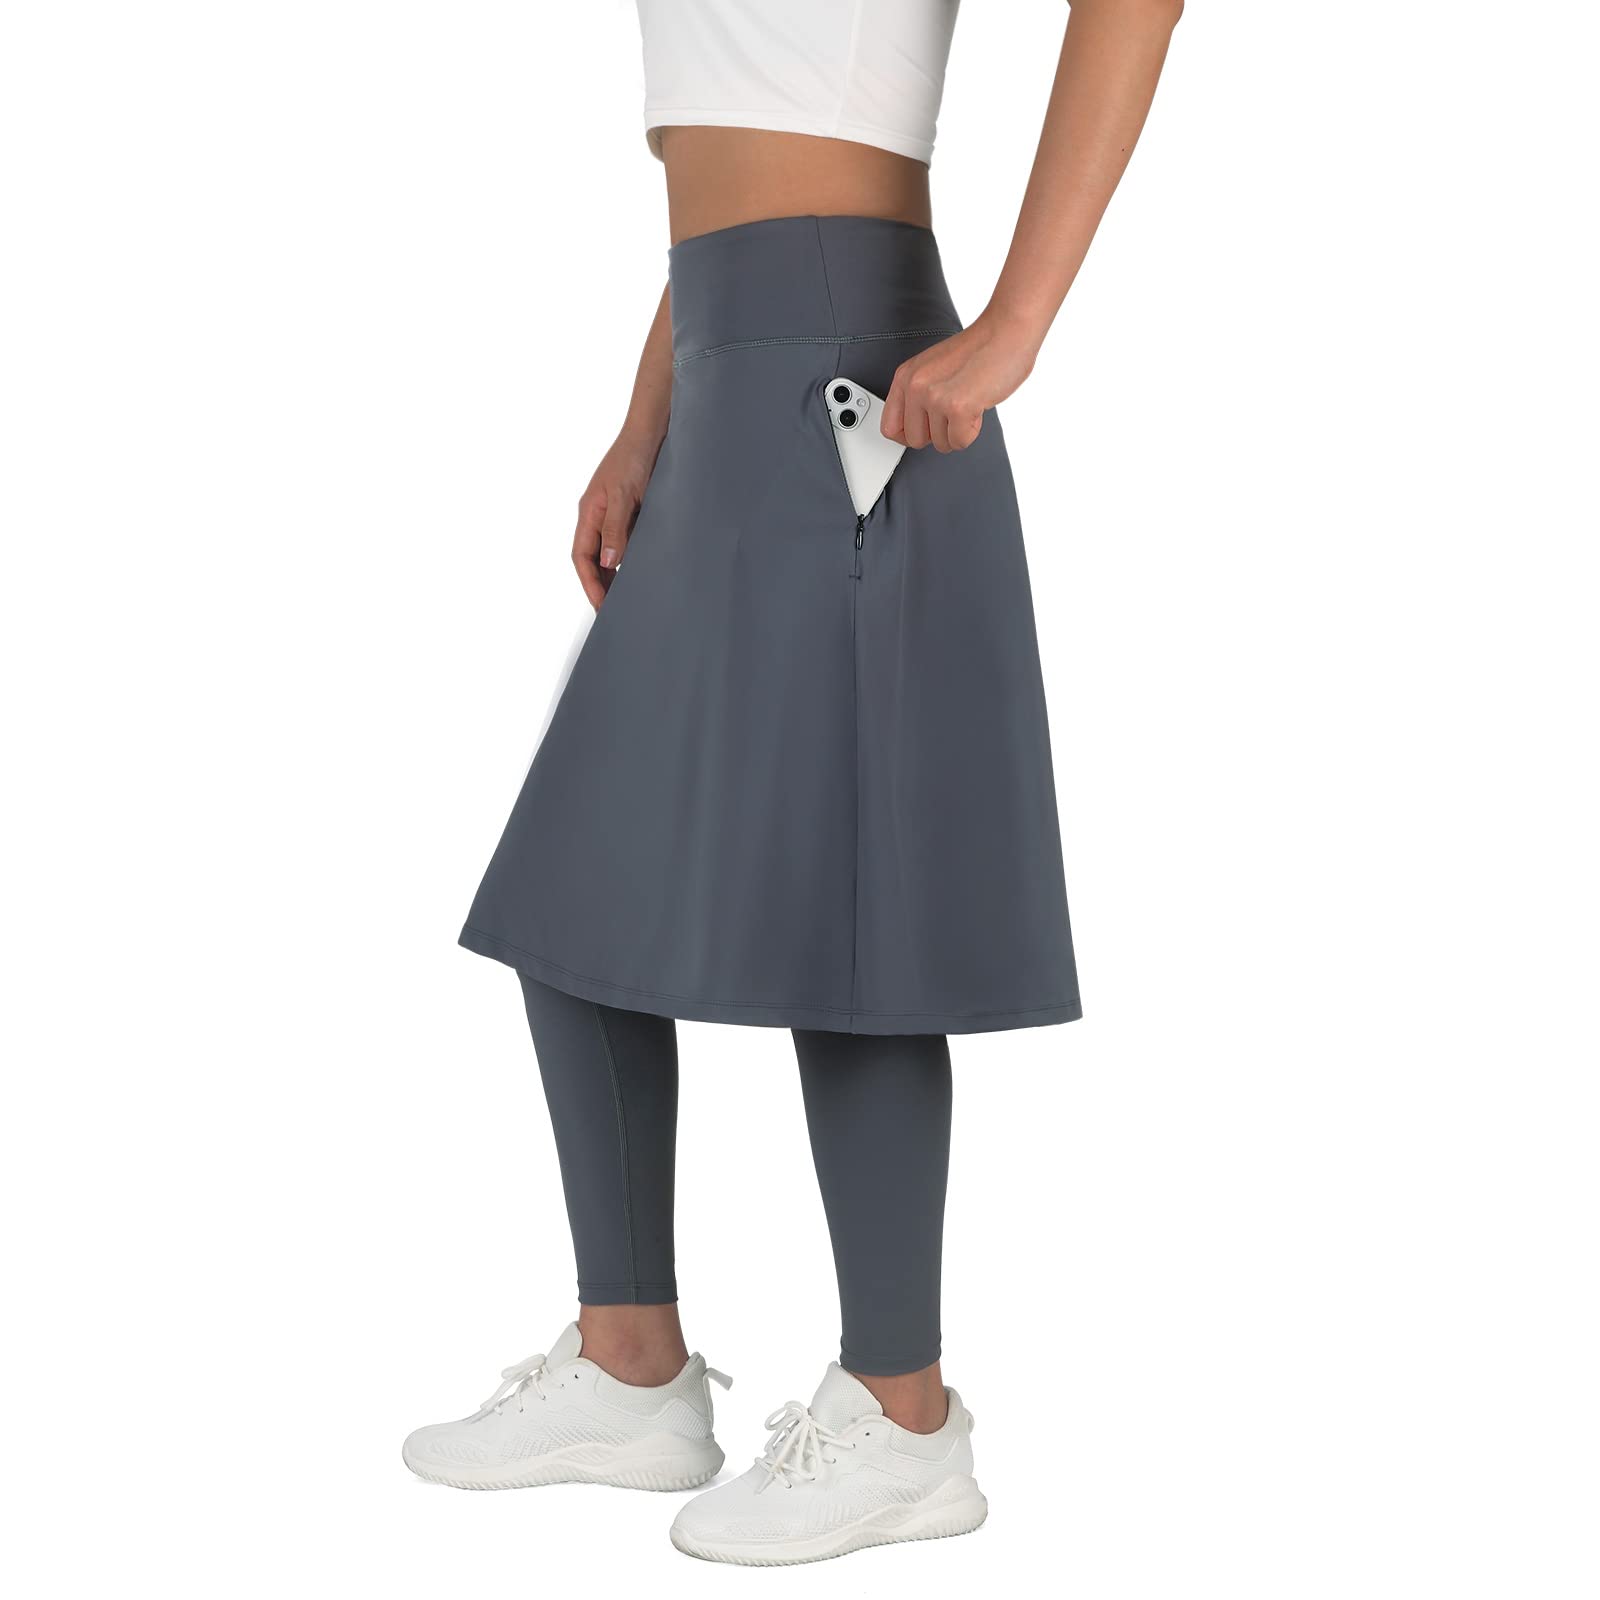 anivivo ANIVIVO Women Long Knee Length Skirt With Full Leggings,Skirted  Leggings with High Waisted Zipper Pockets(Grey-Full Length,XL)